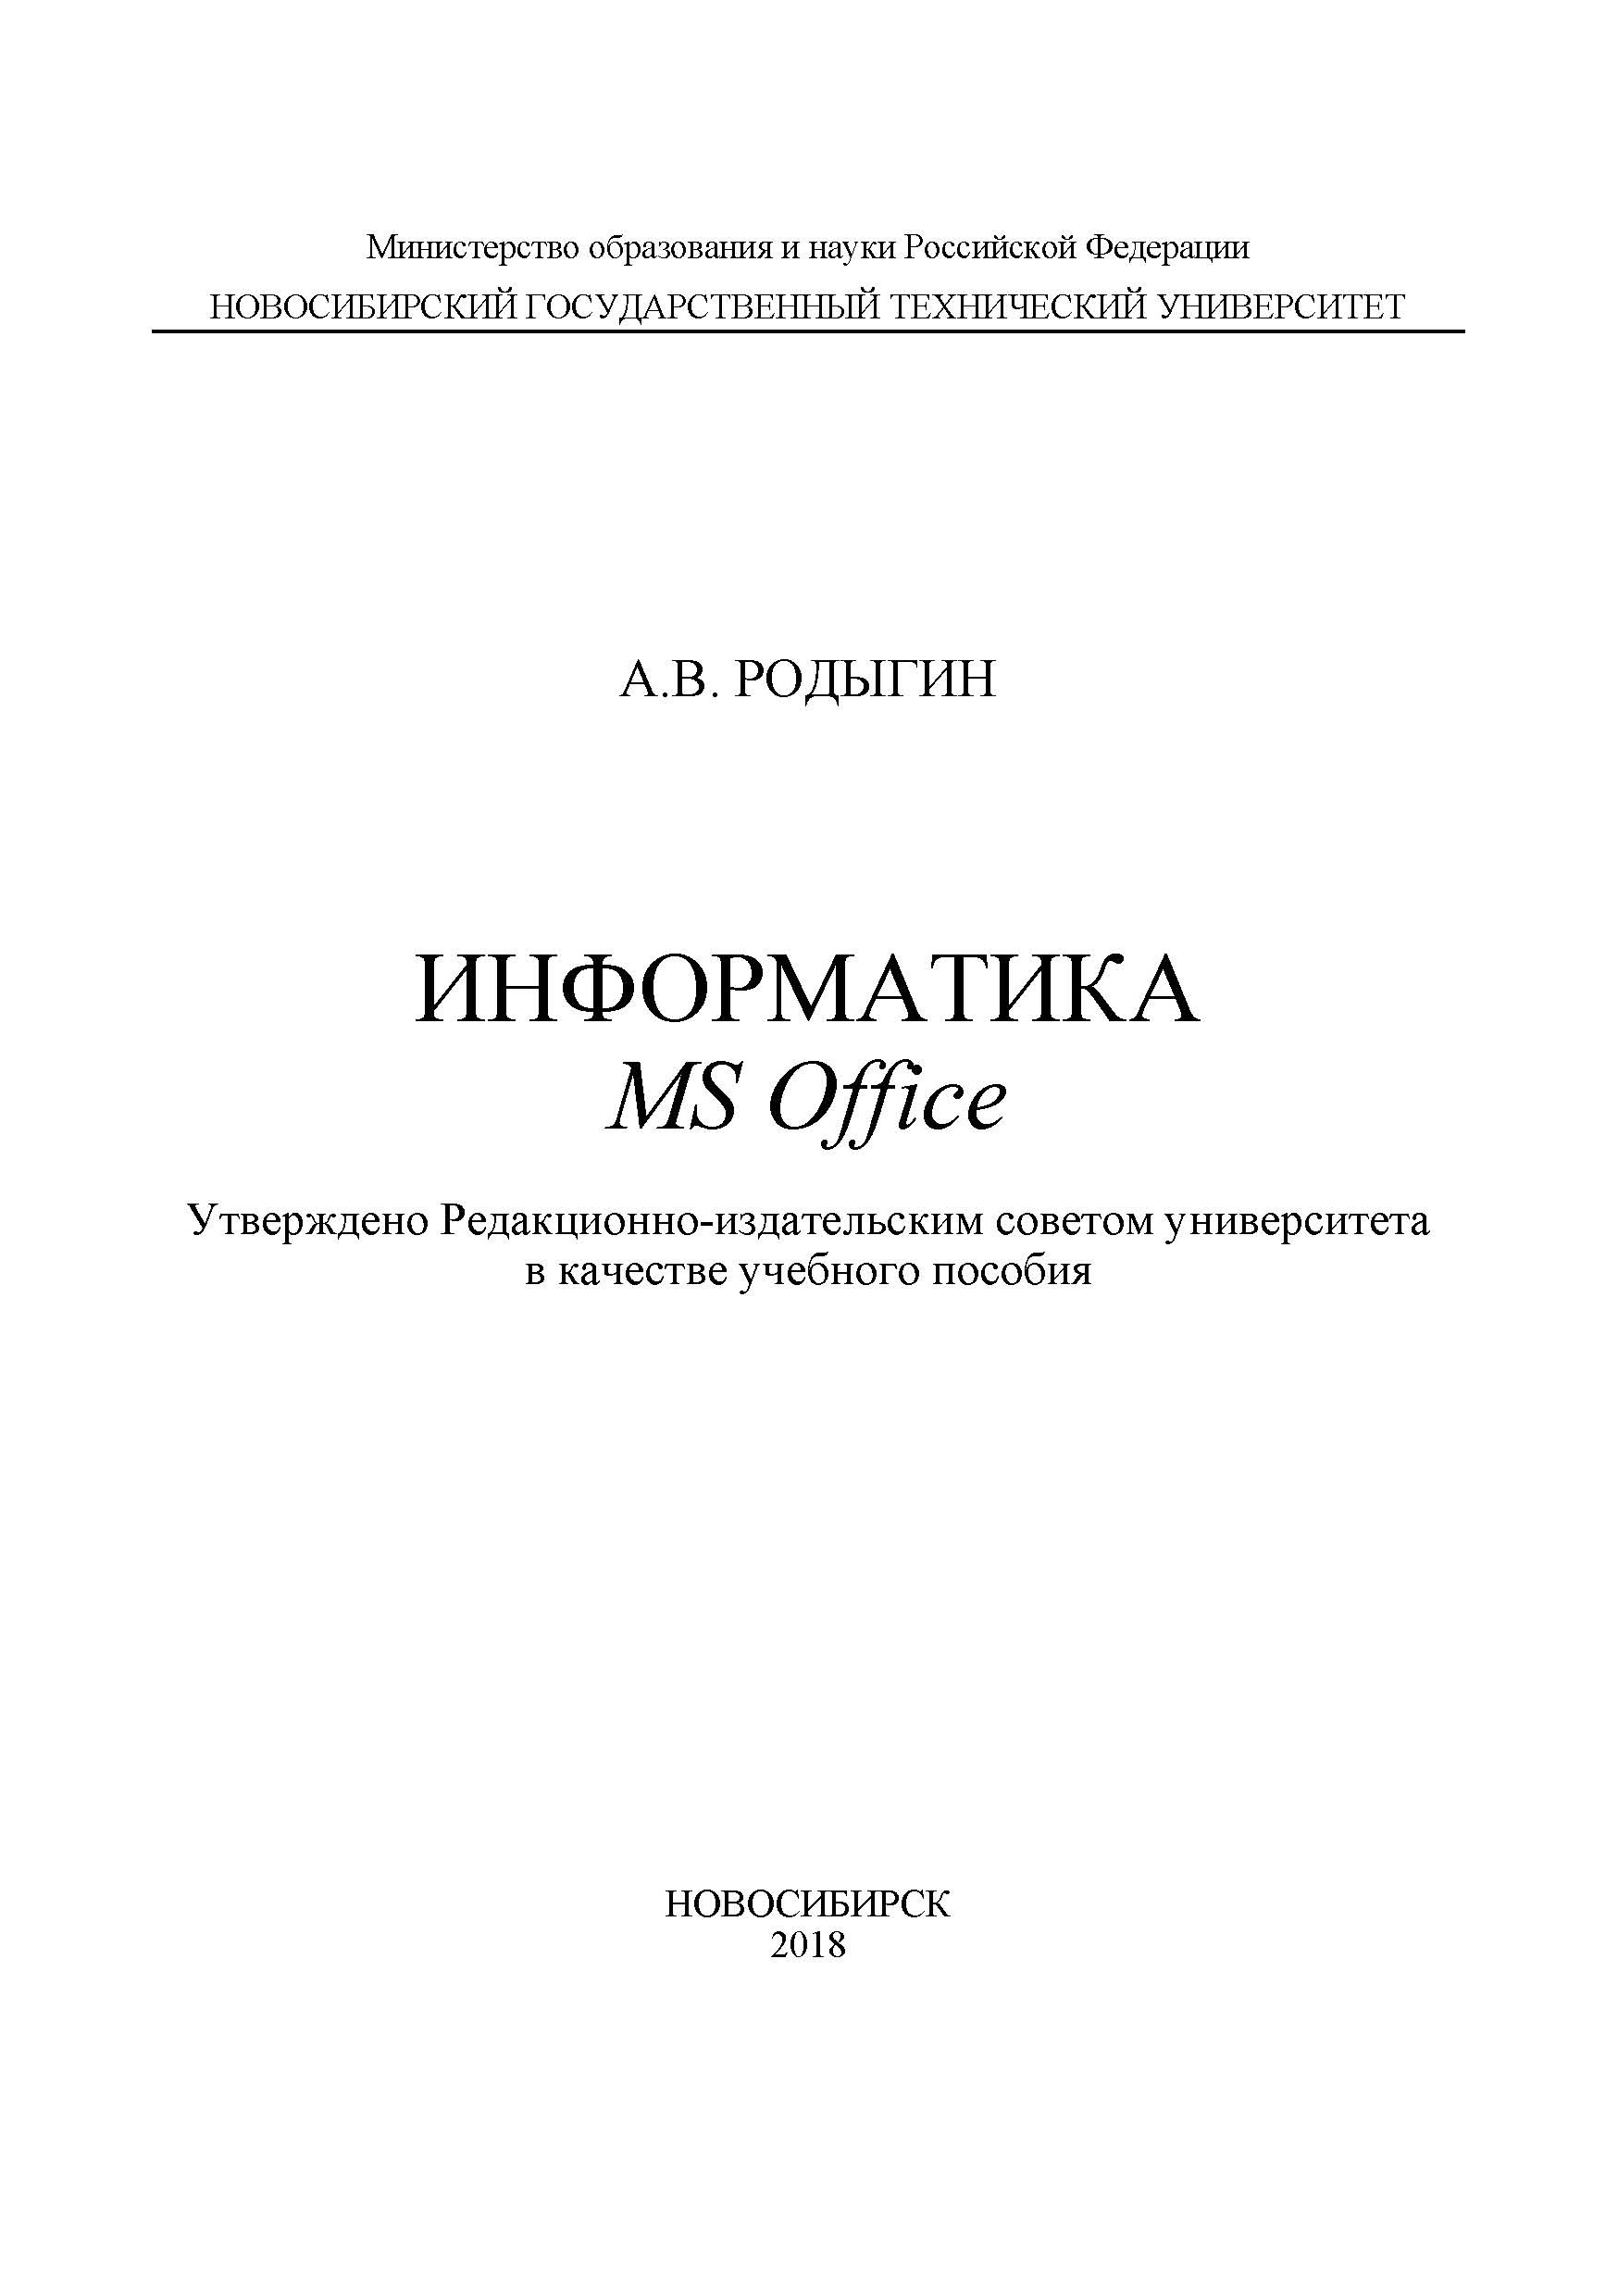 Книга  Информатика. MS Office созданная А. В. Родыгин может относится к жанру информатика и вычислительная техника, программы. Стоимость электронной книги Информатика. MS Office с идентификатором 45254770 составляет 137.00 руб.